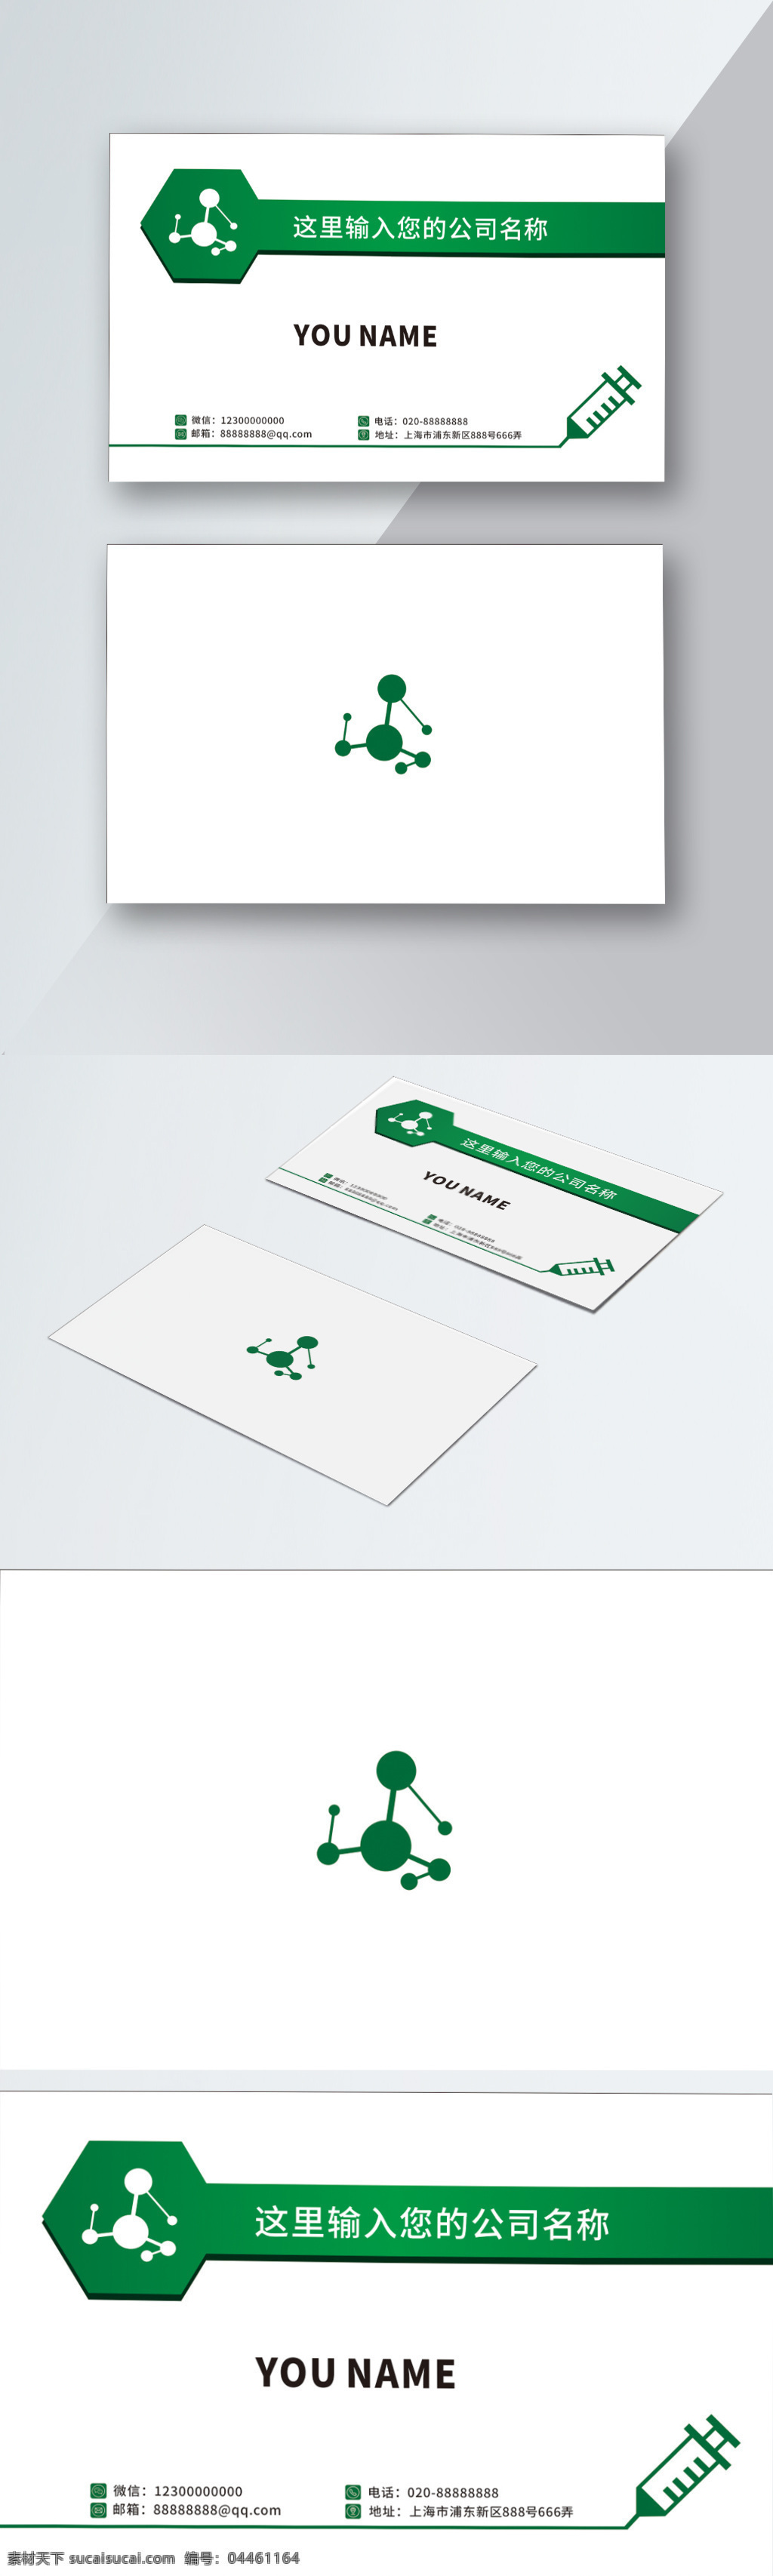 绿色 简约 大气 医疗 名片 绿色名片 高端 简洁 名片设计 卡证 名片模板 医疗器械名片 卡片